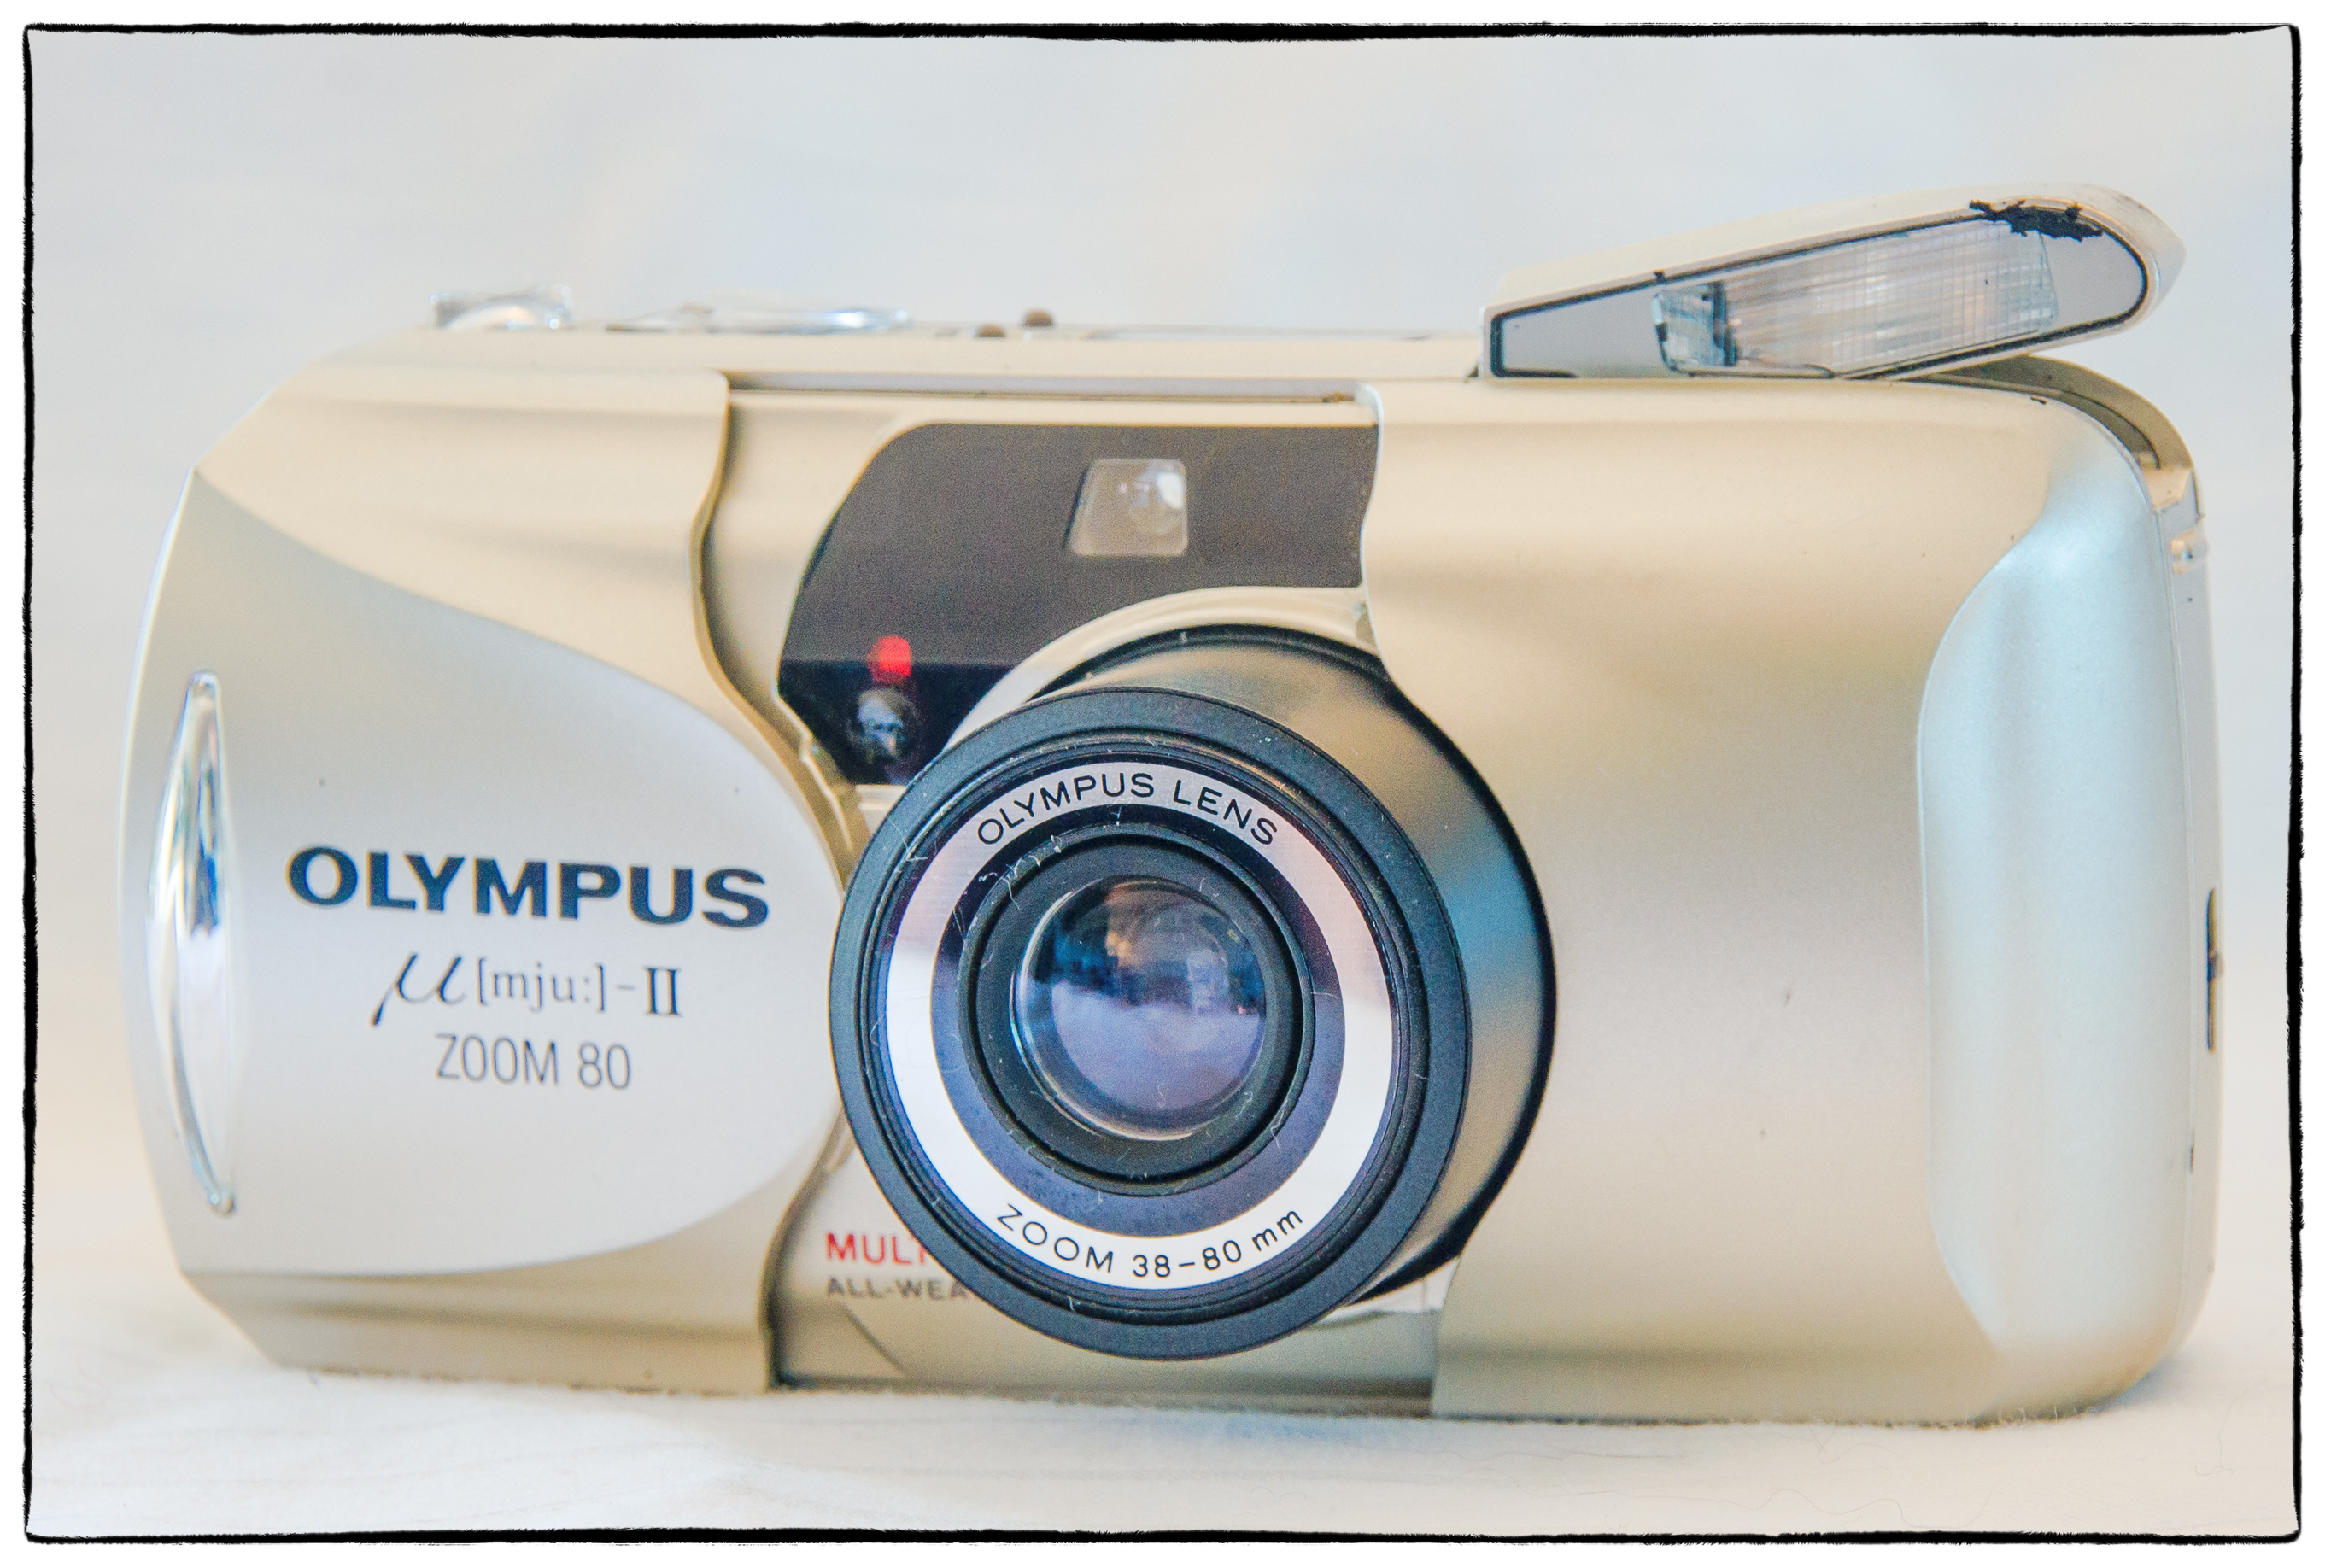 Sluit een verzekering af Compliment Zegevieren July Film Camera – Olympus Mju (Infinity Stylus) II Zoom 80 – Photography,  Images and Cameras